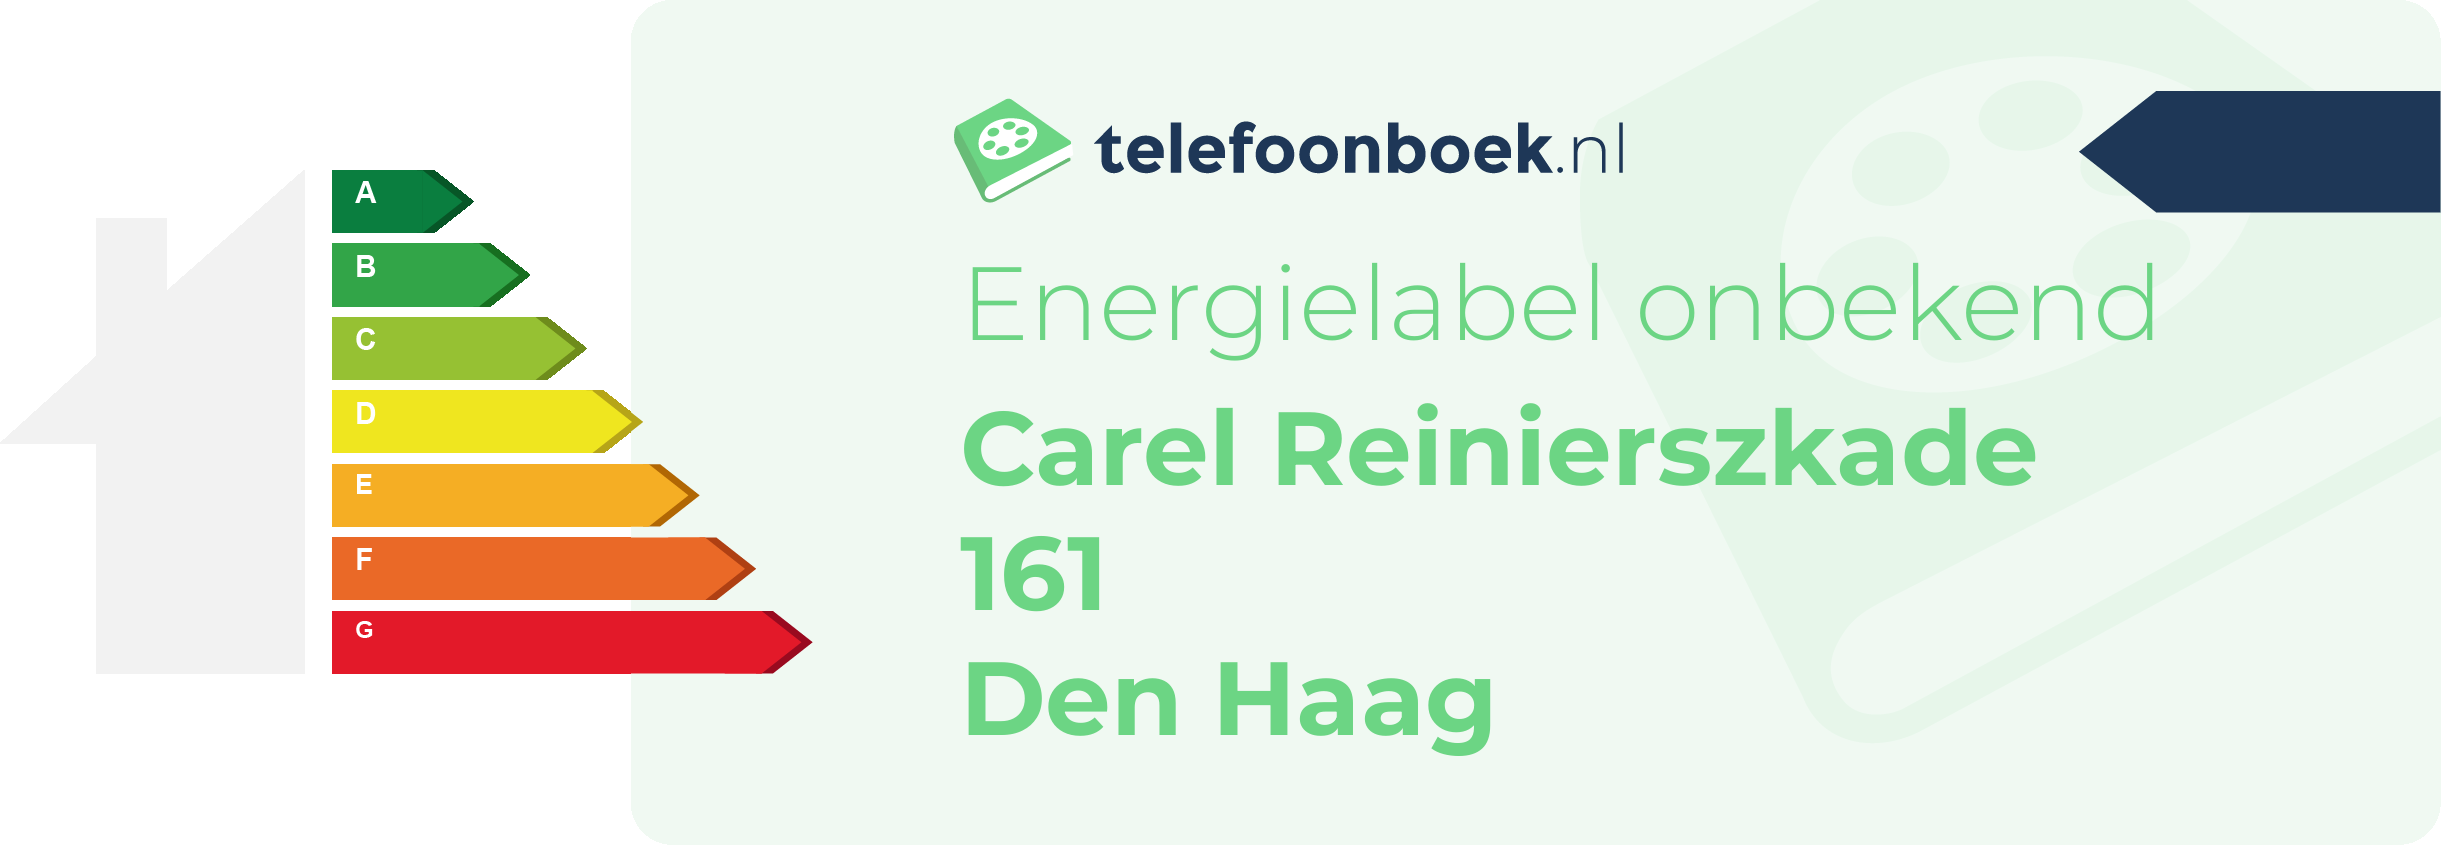 Energielabel Carel Reinierszkade 161 Den Haag